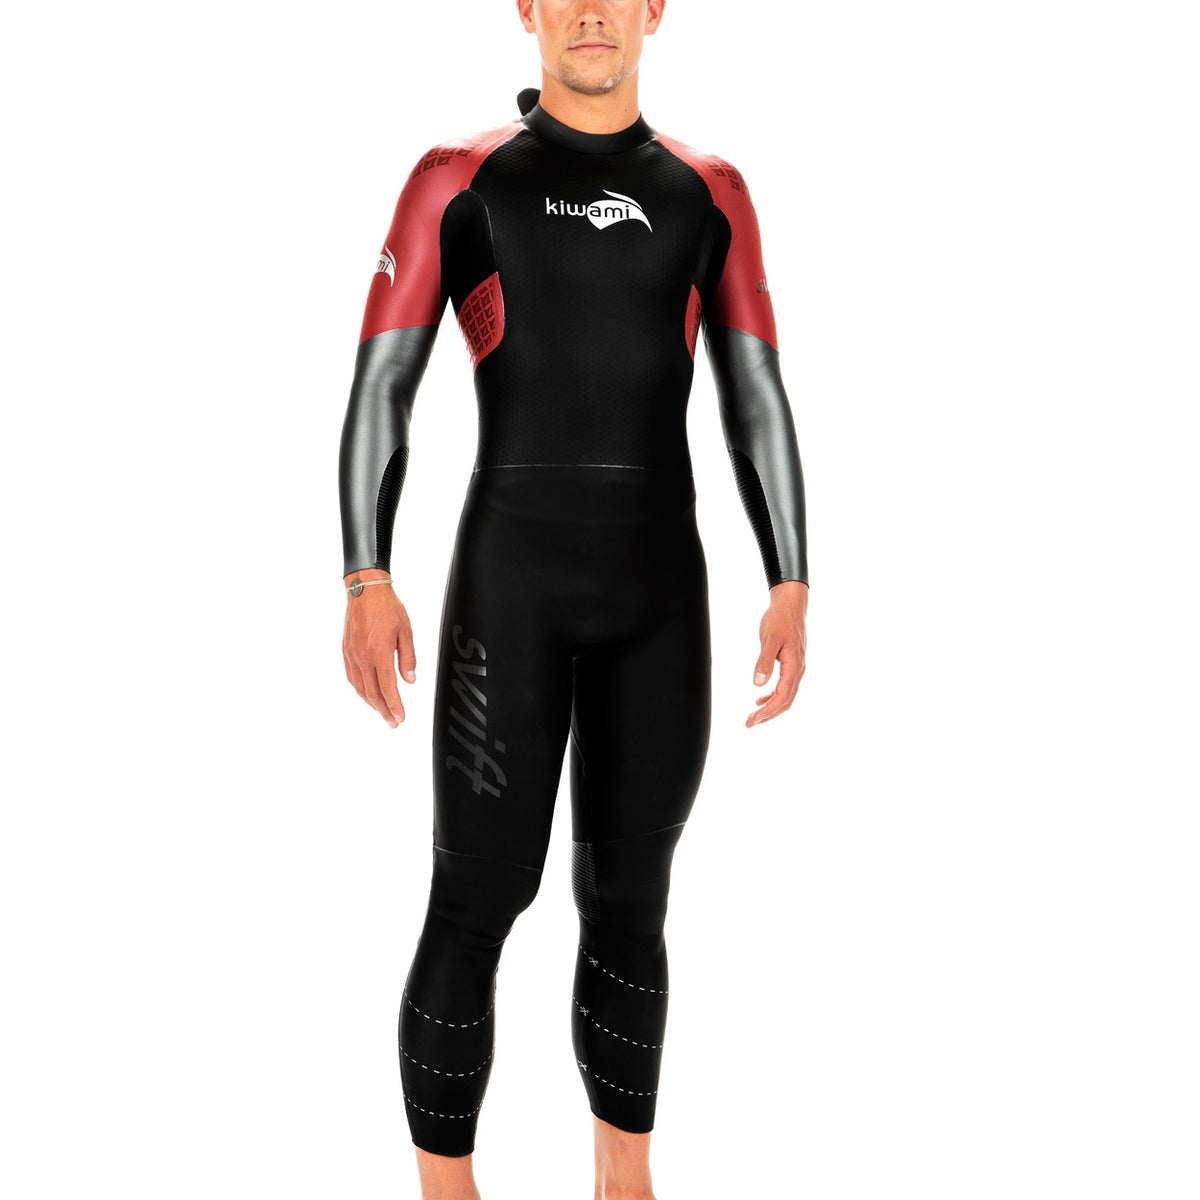 SWIFT triathlon wetsuit